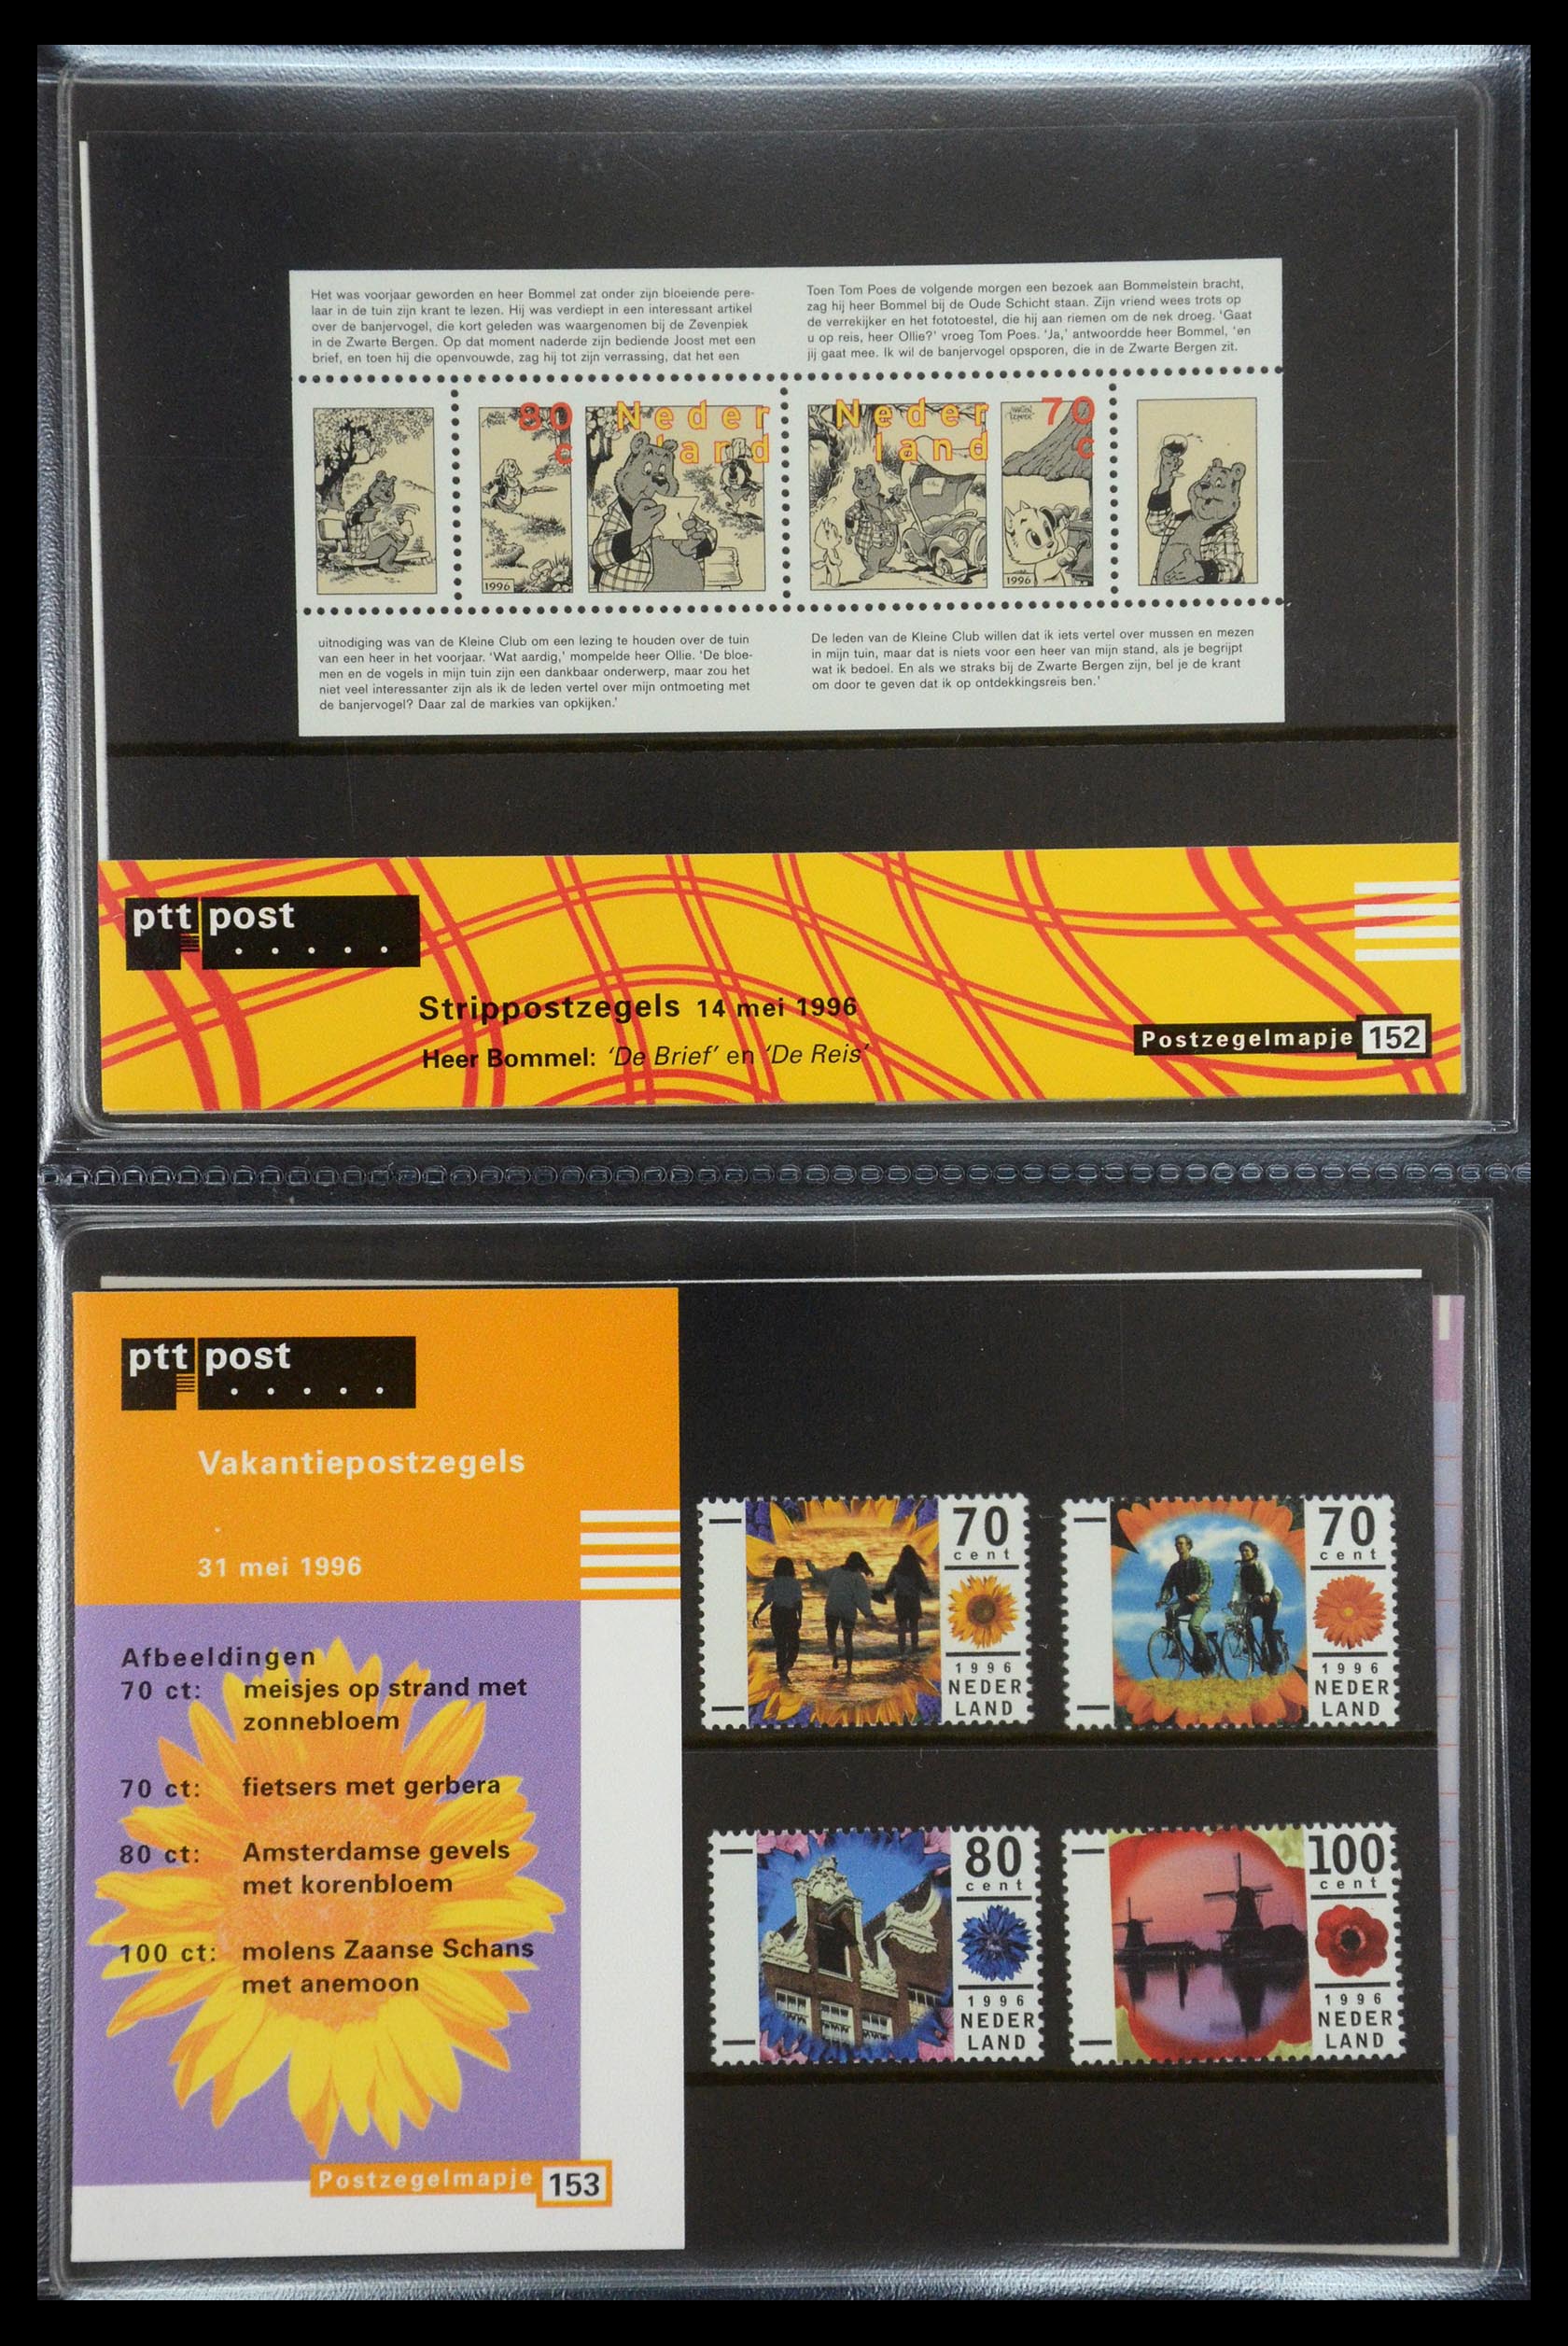 35187 078 - Stamp Collection 35187 Netherlands PTT presentation packs 1982-2019!